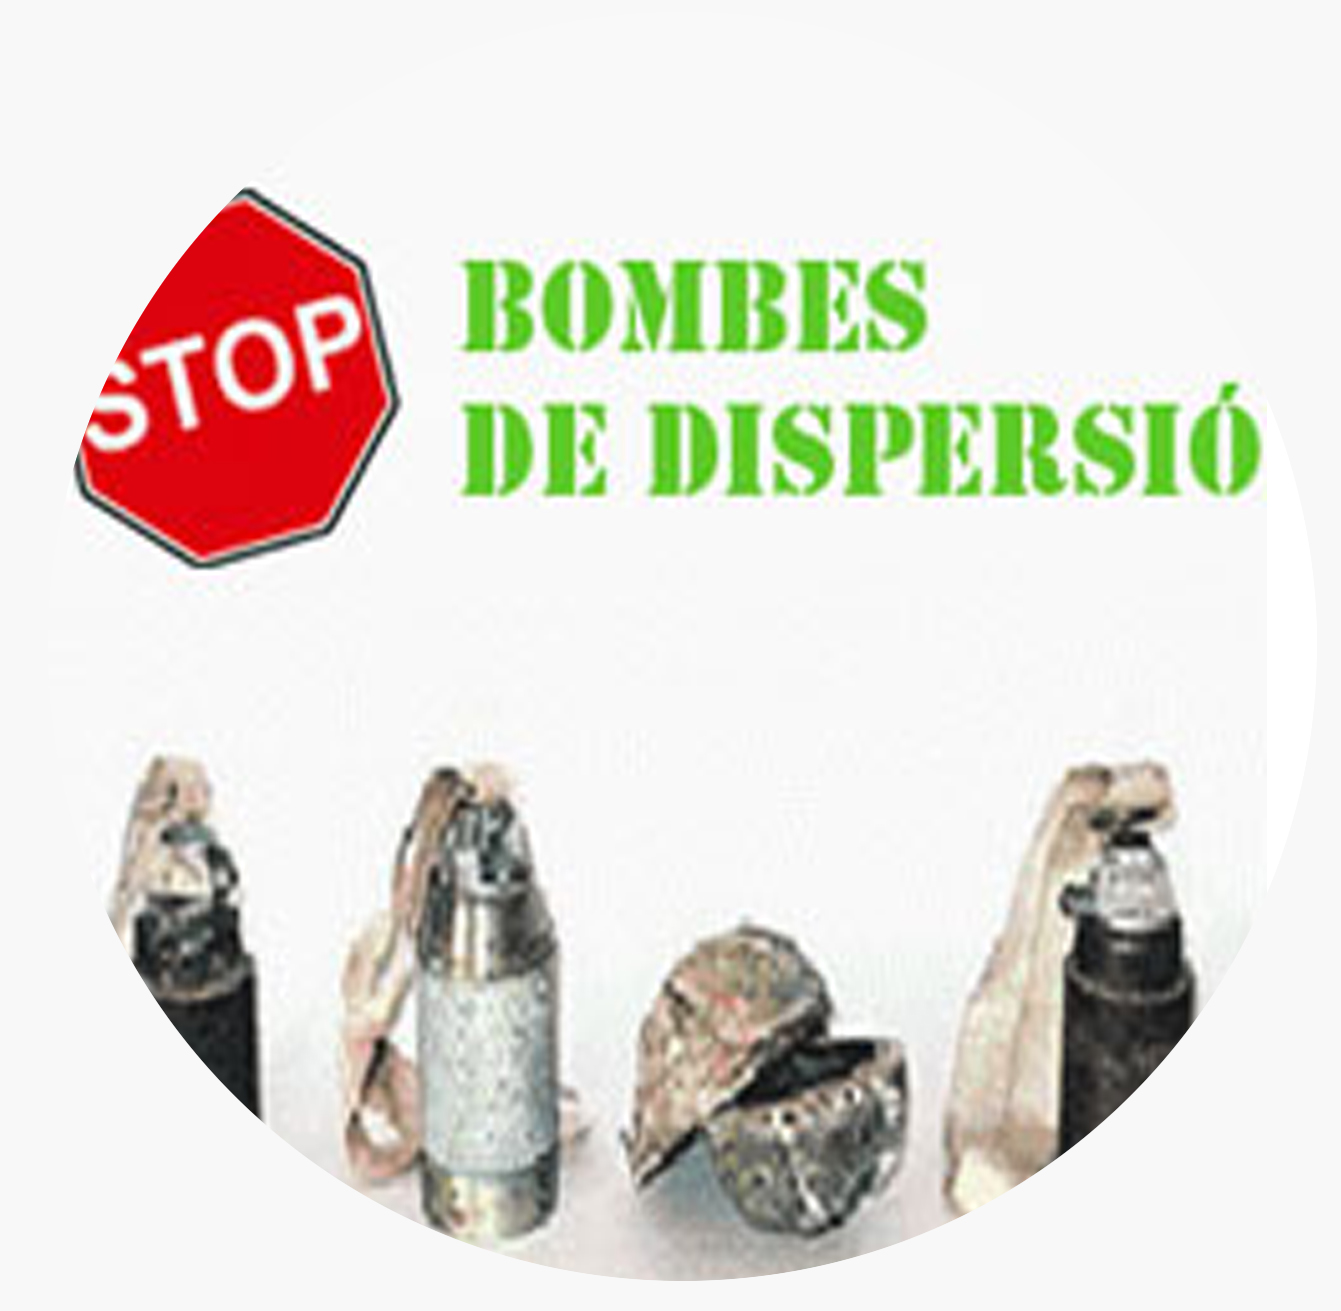 Stop bombes dispersio-round